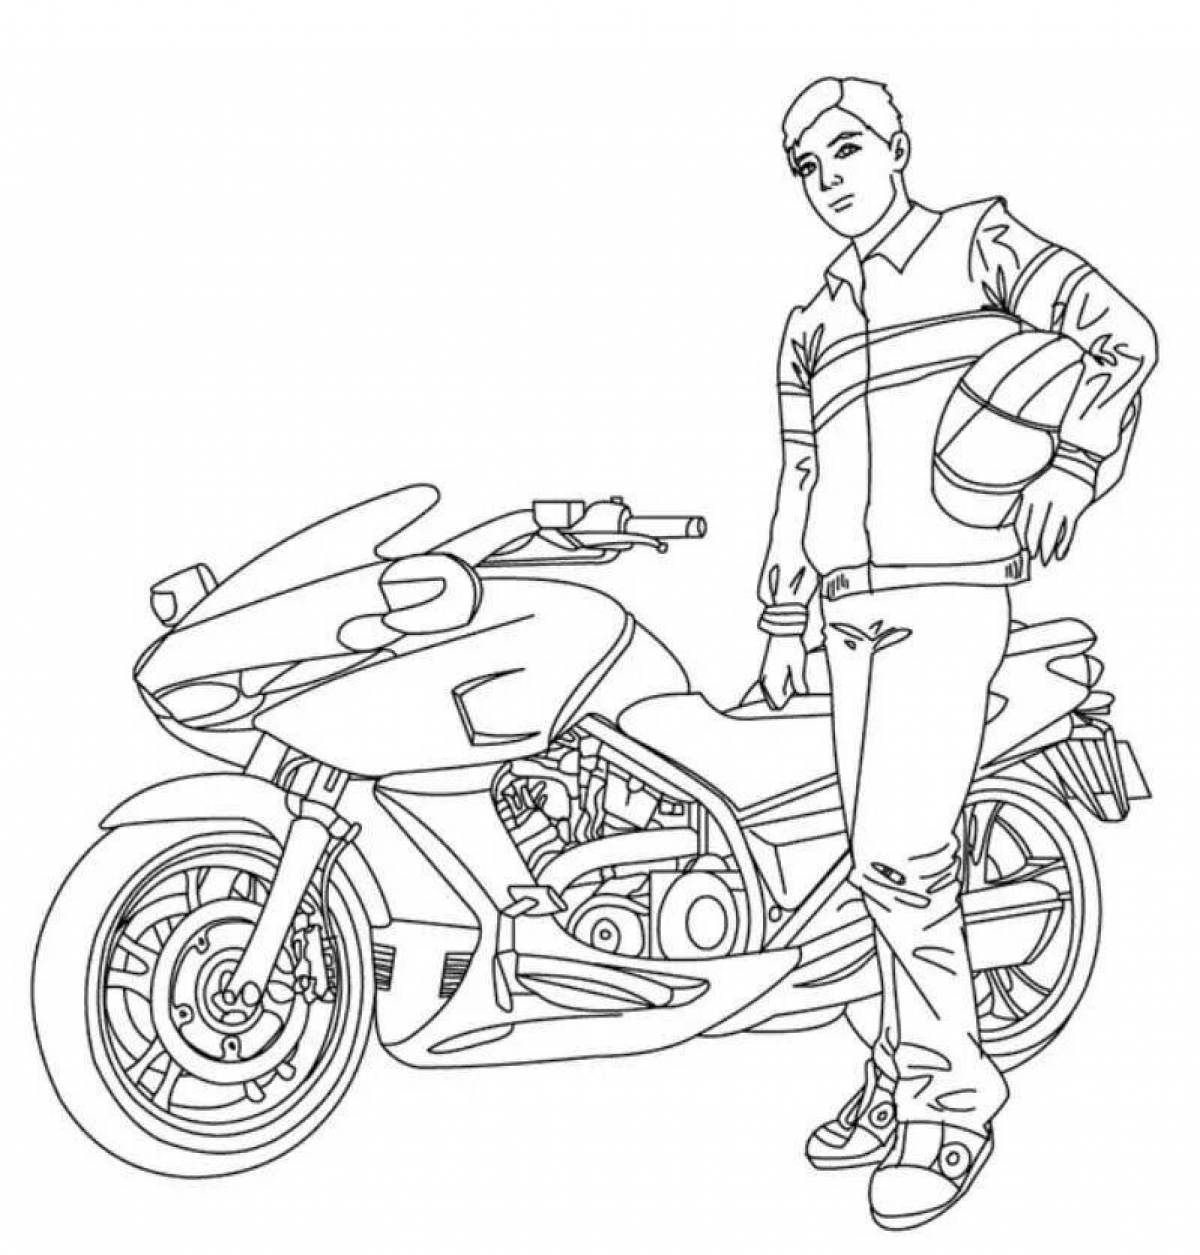 Dynamic biker coloring page